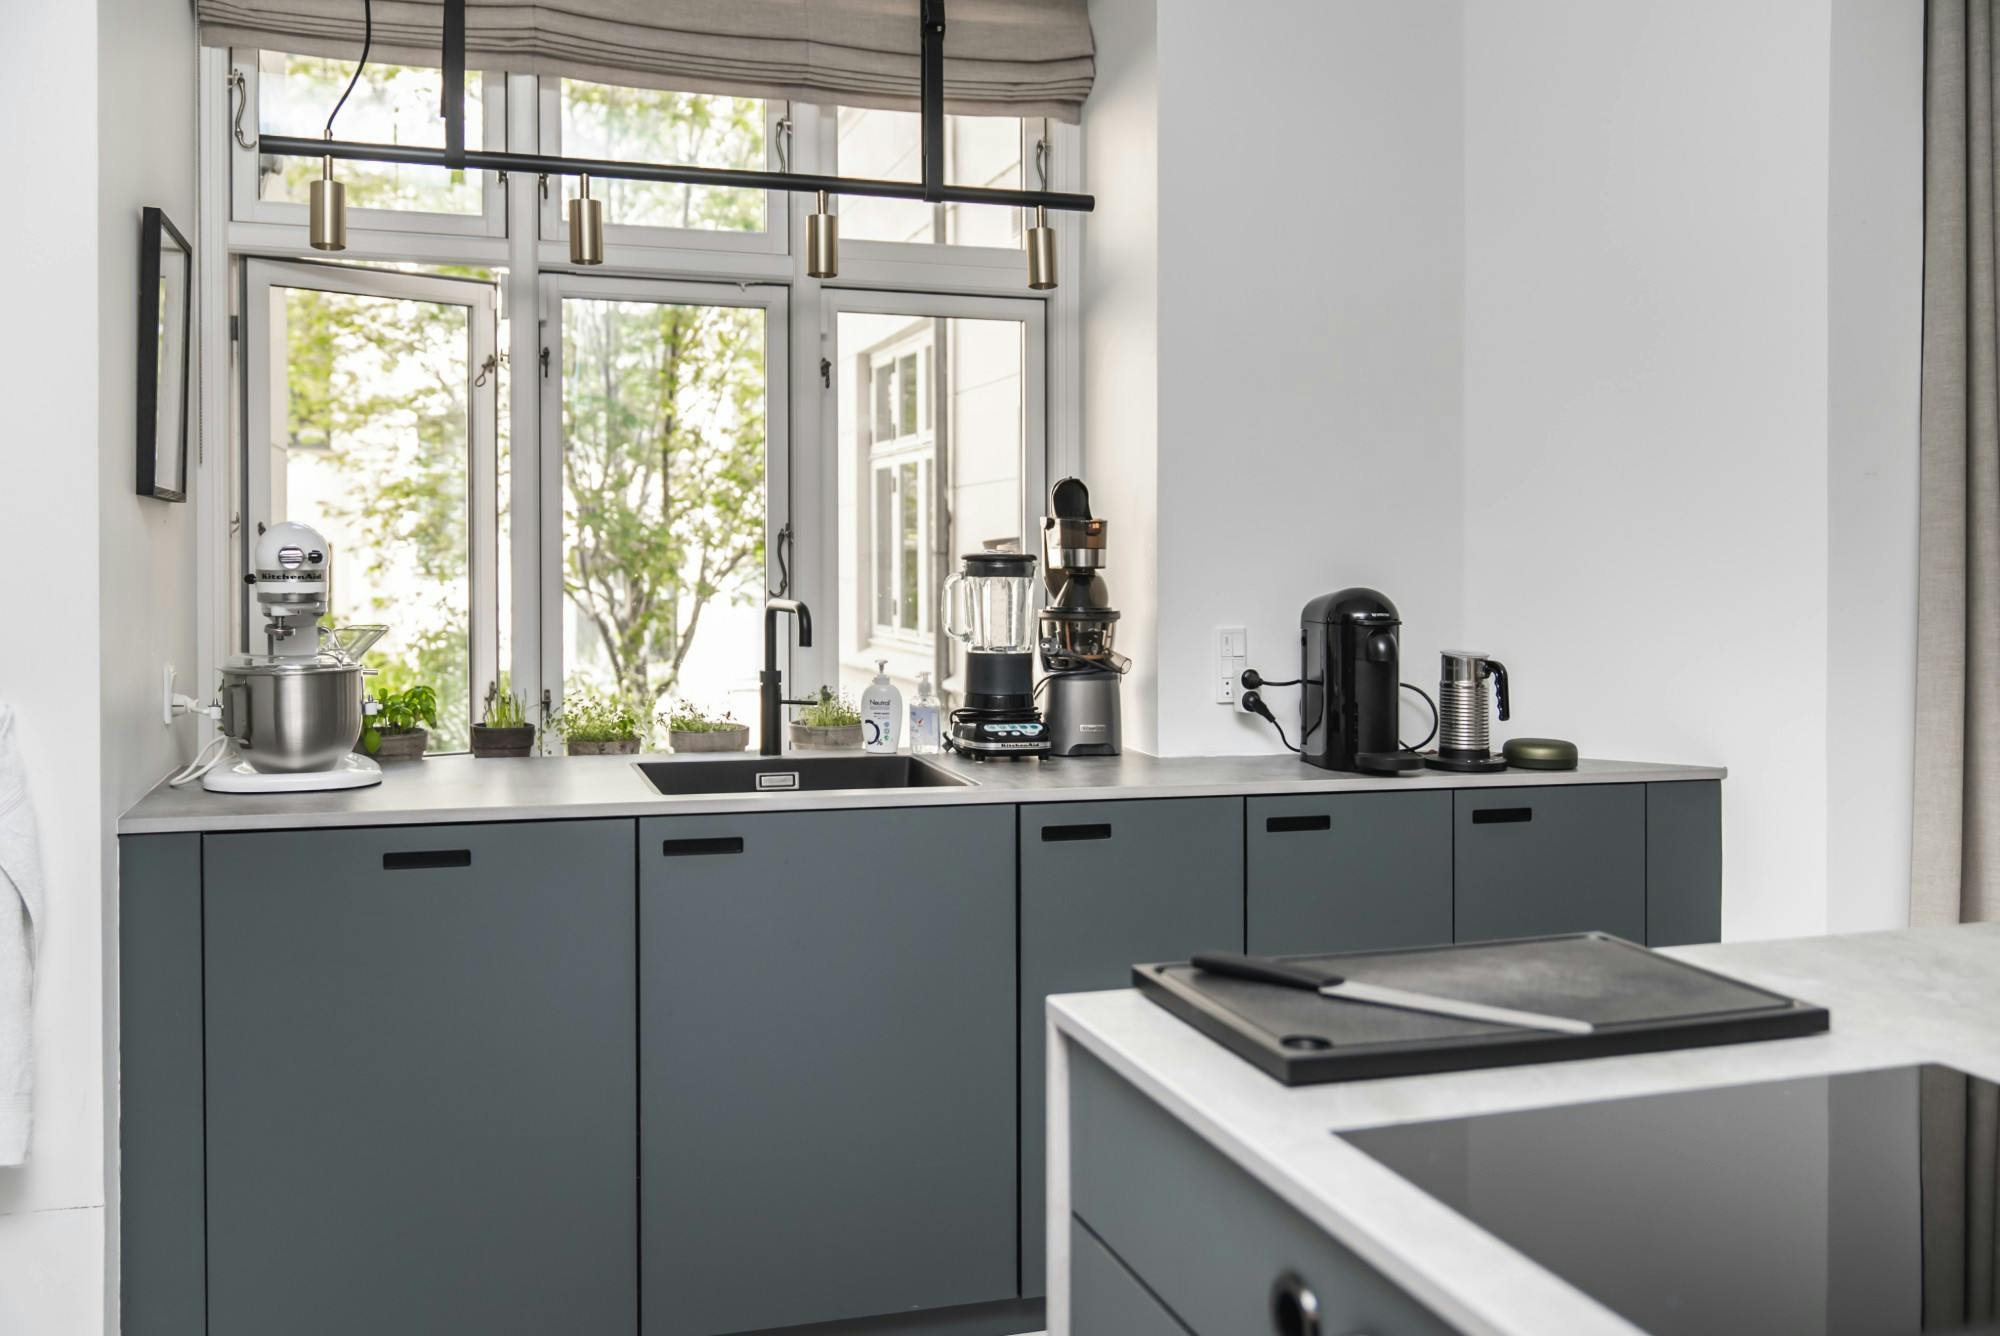 Numero immagine 38 della sezione corrente di Professional features for a domestic kitchen worktop di Cosentino Italia